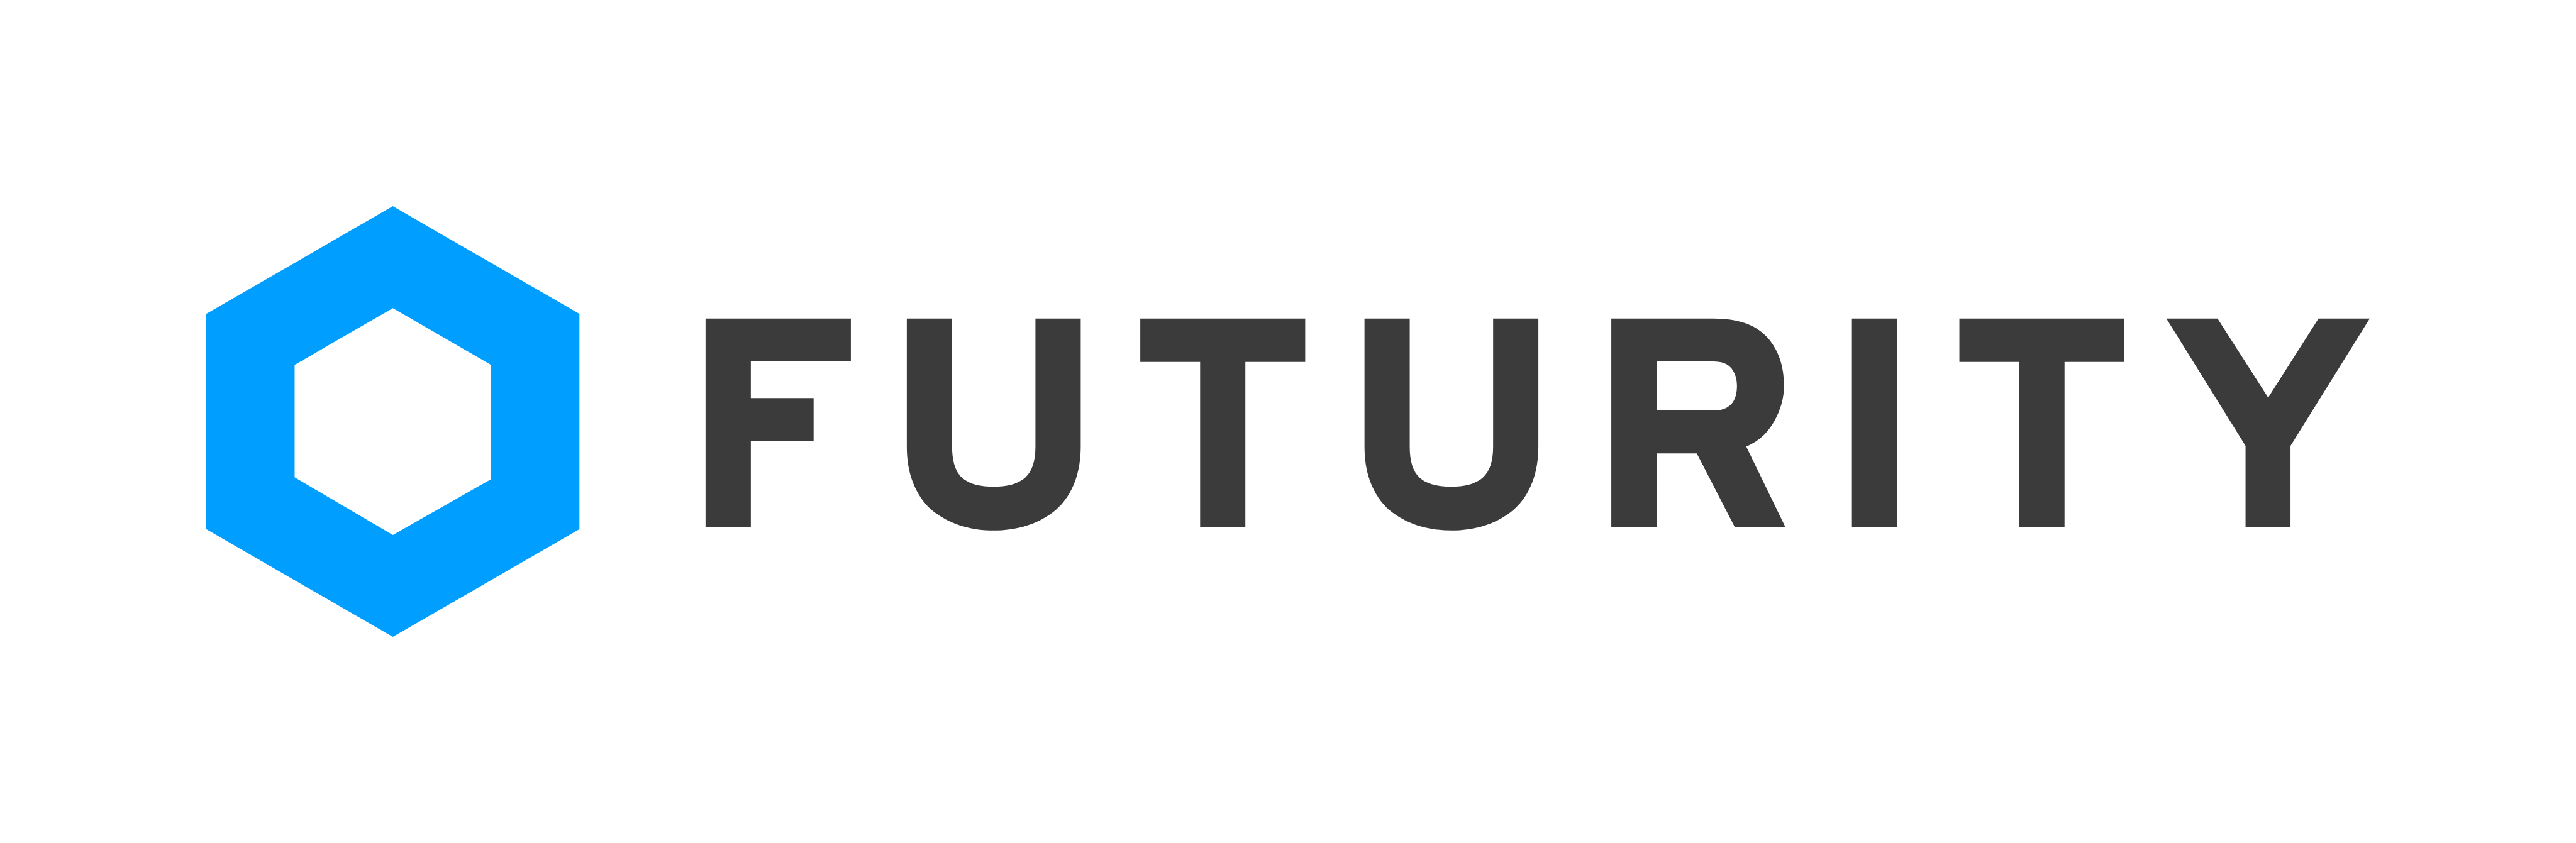 Futurity.pl - dedykowane aplikacje dla biznesu